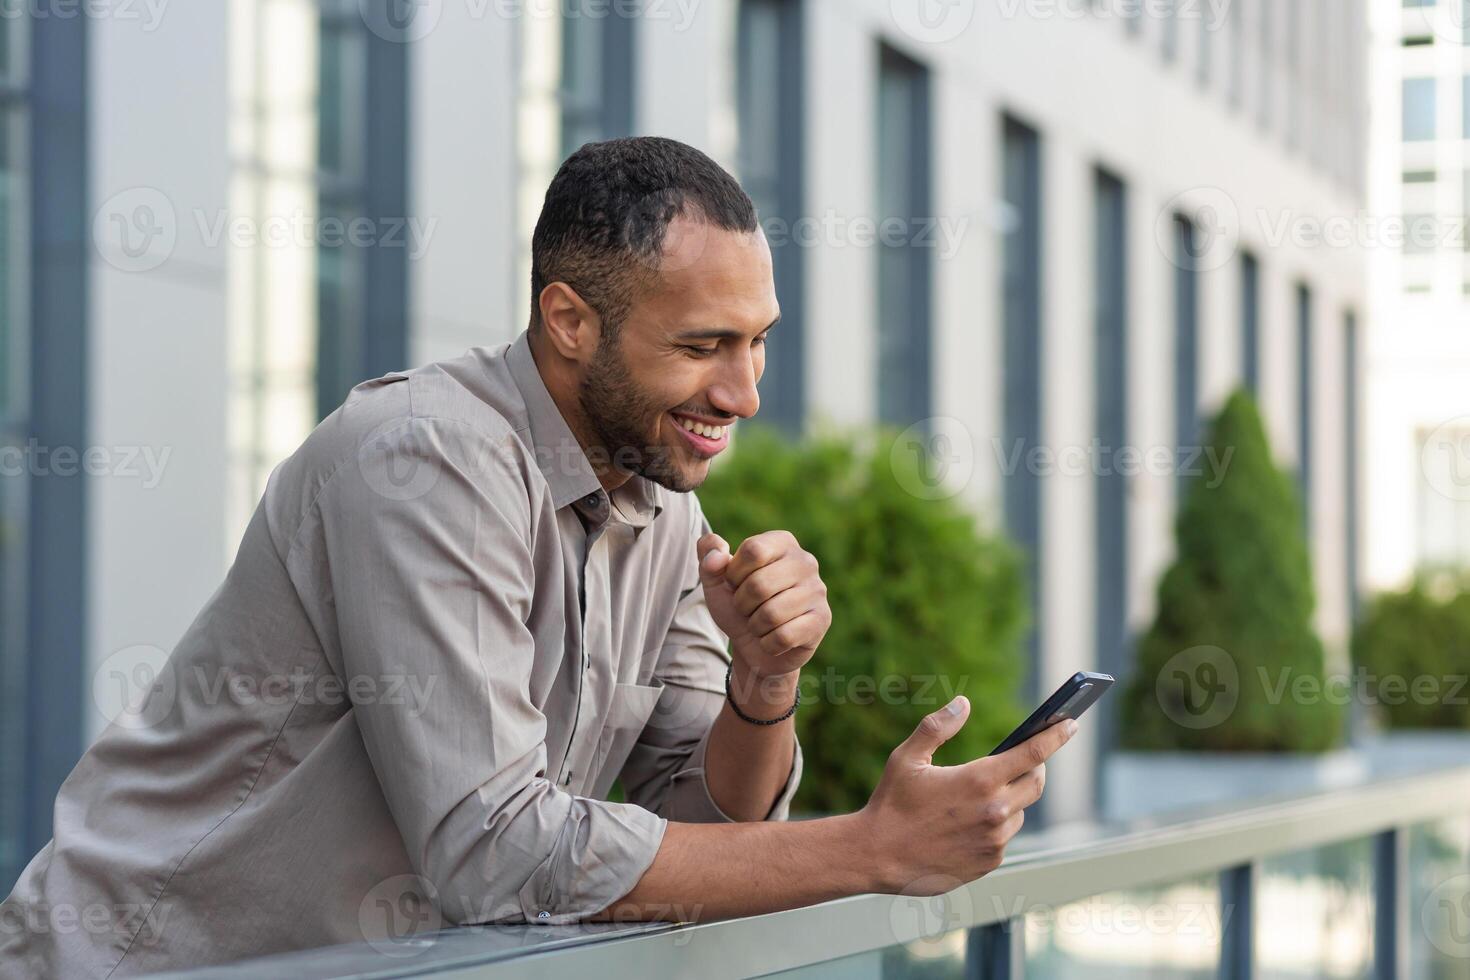 contento africano americano empresario mirando a teléfono inteligente pantalla, hombre en camisa fuera de moderno oficina edificio recibido bueno Noticias de ganar y éxito en línea, jefe celebrando financiero triunfo foto